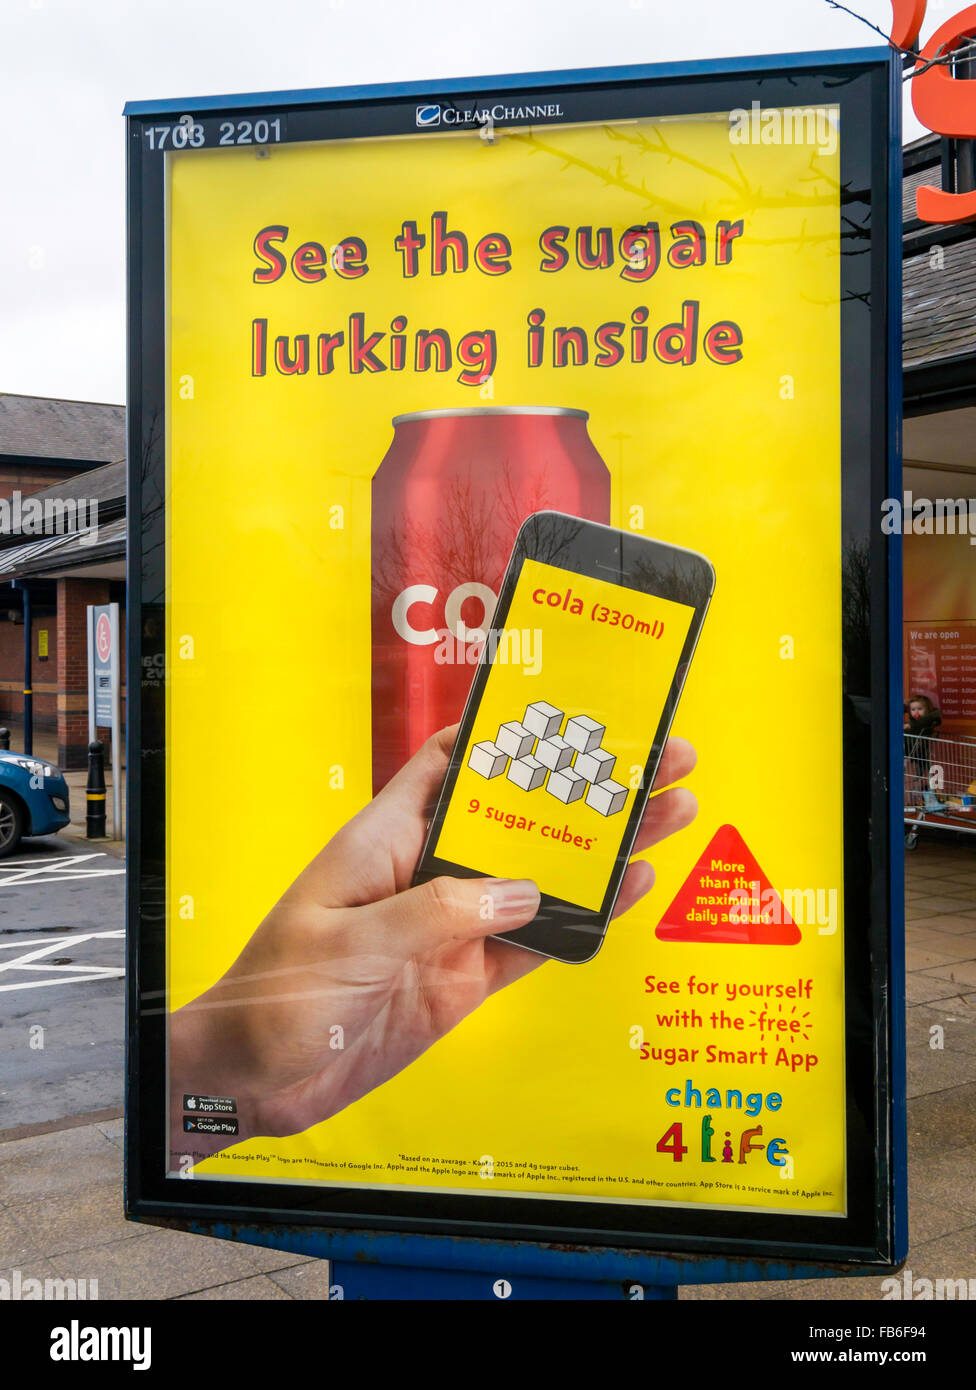 Werbung für ein Mobiltelefon-App, die Scannen von Barcodes auf Lebensmittel und deren Zuckergehalt anzeigen kann Stockfoto